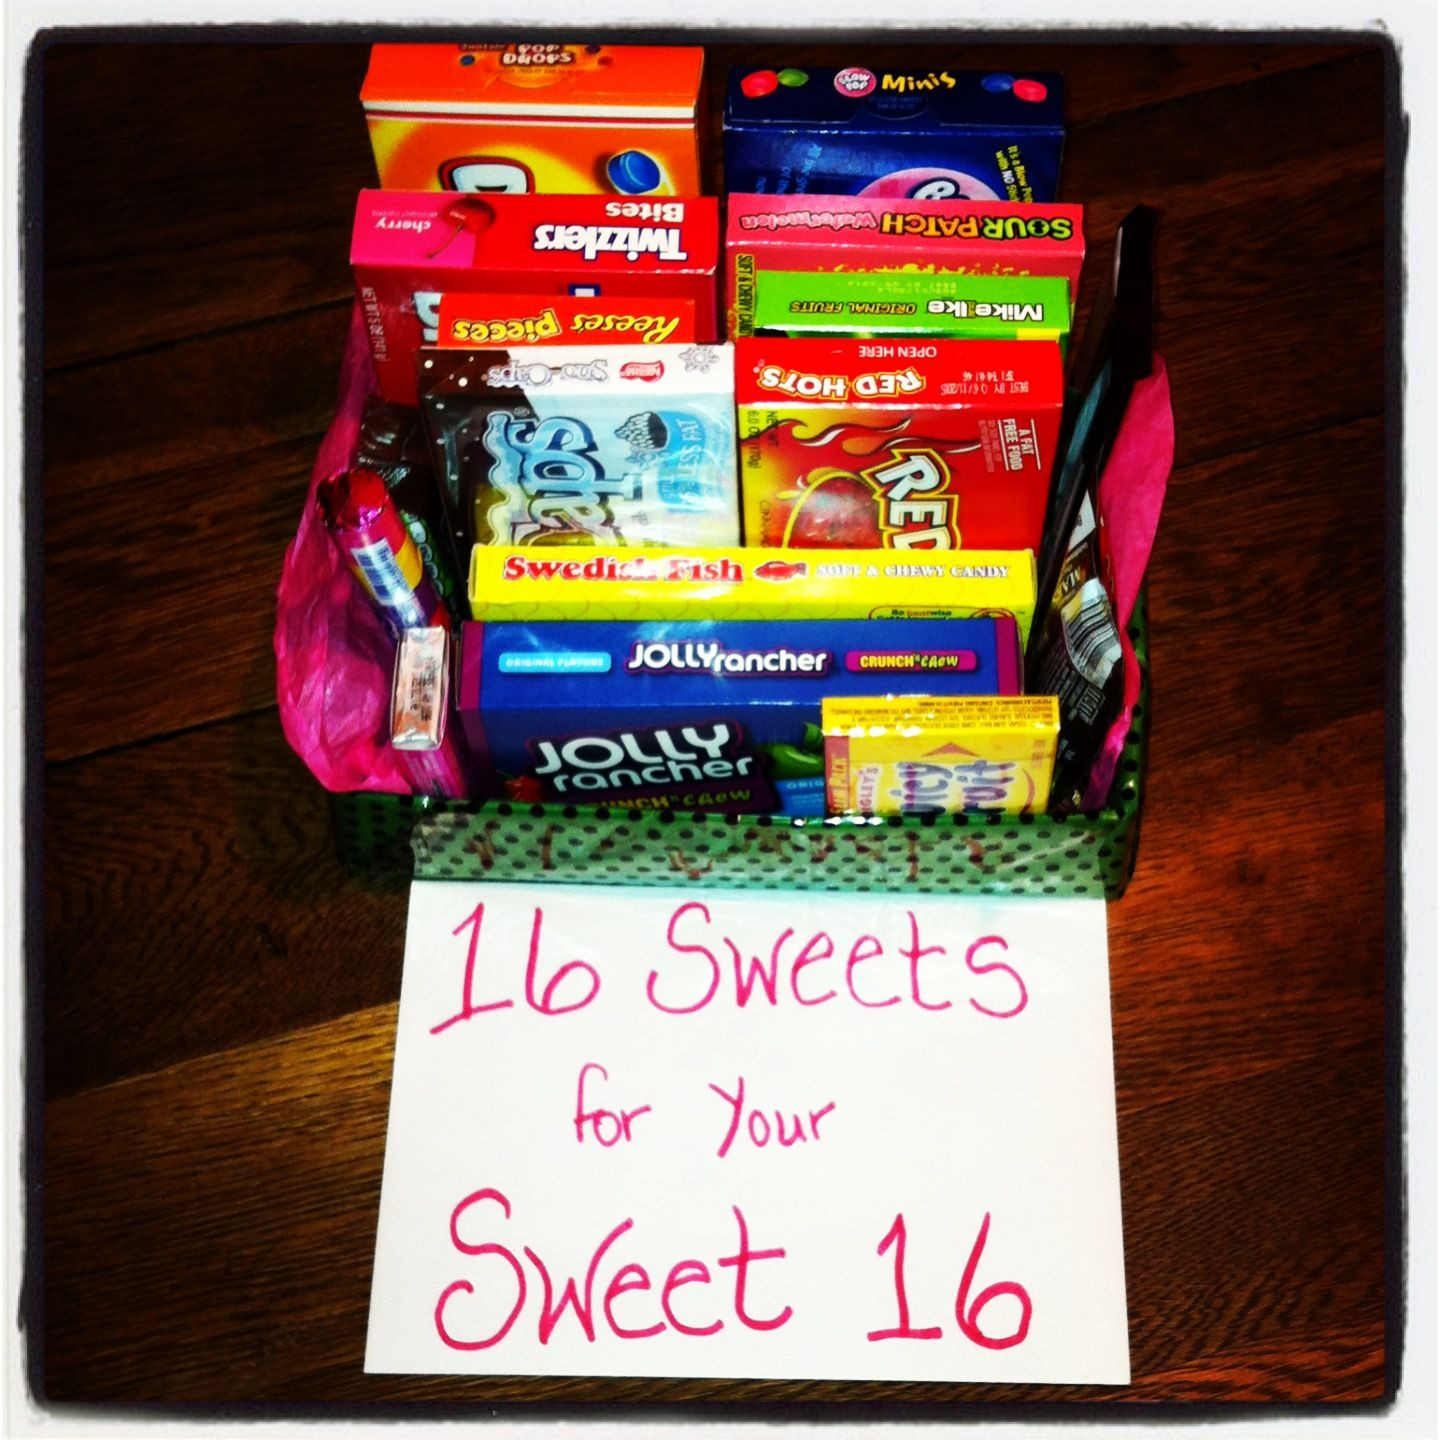 16Th Birthday Gift Ideas
 Best 25 Sweet 16 ts ideas on Pinterest